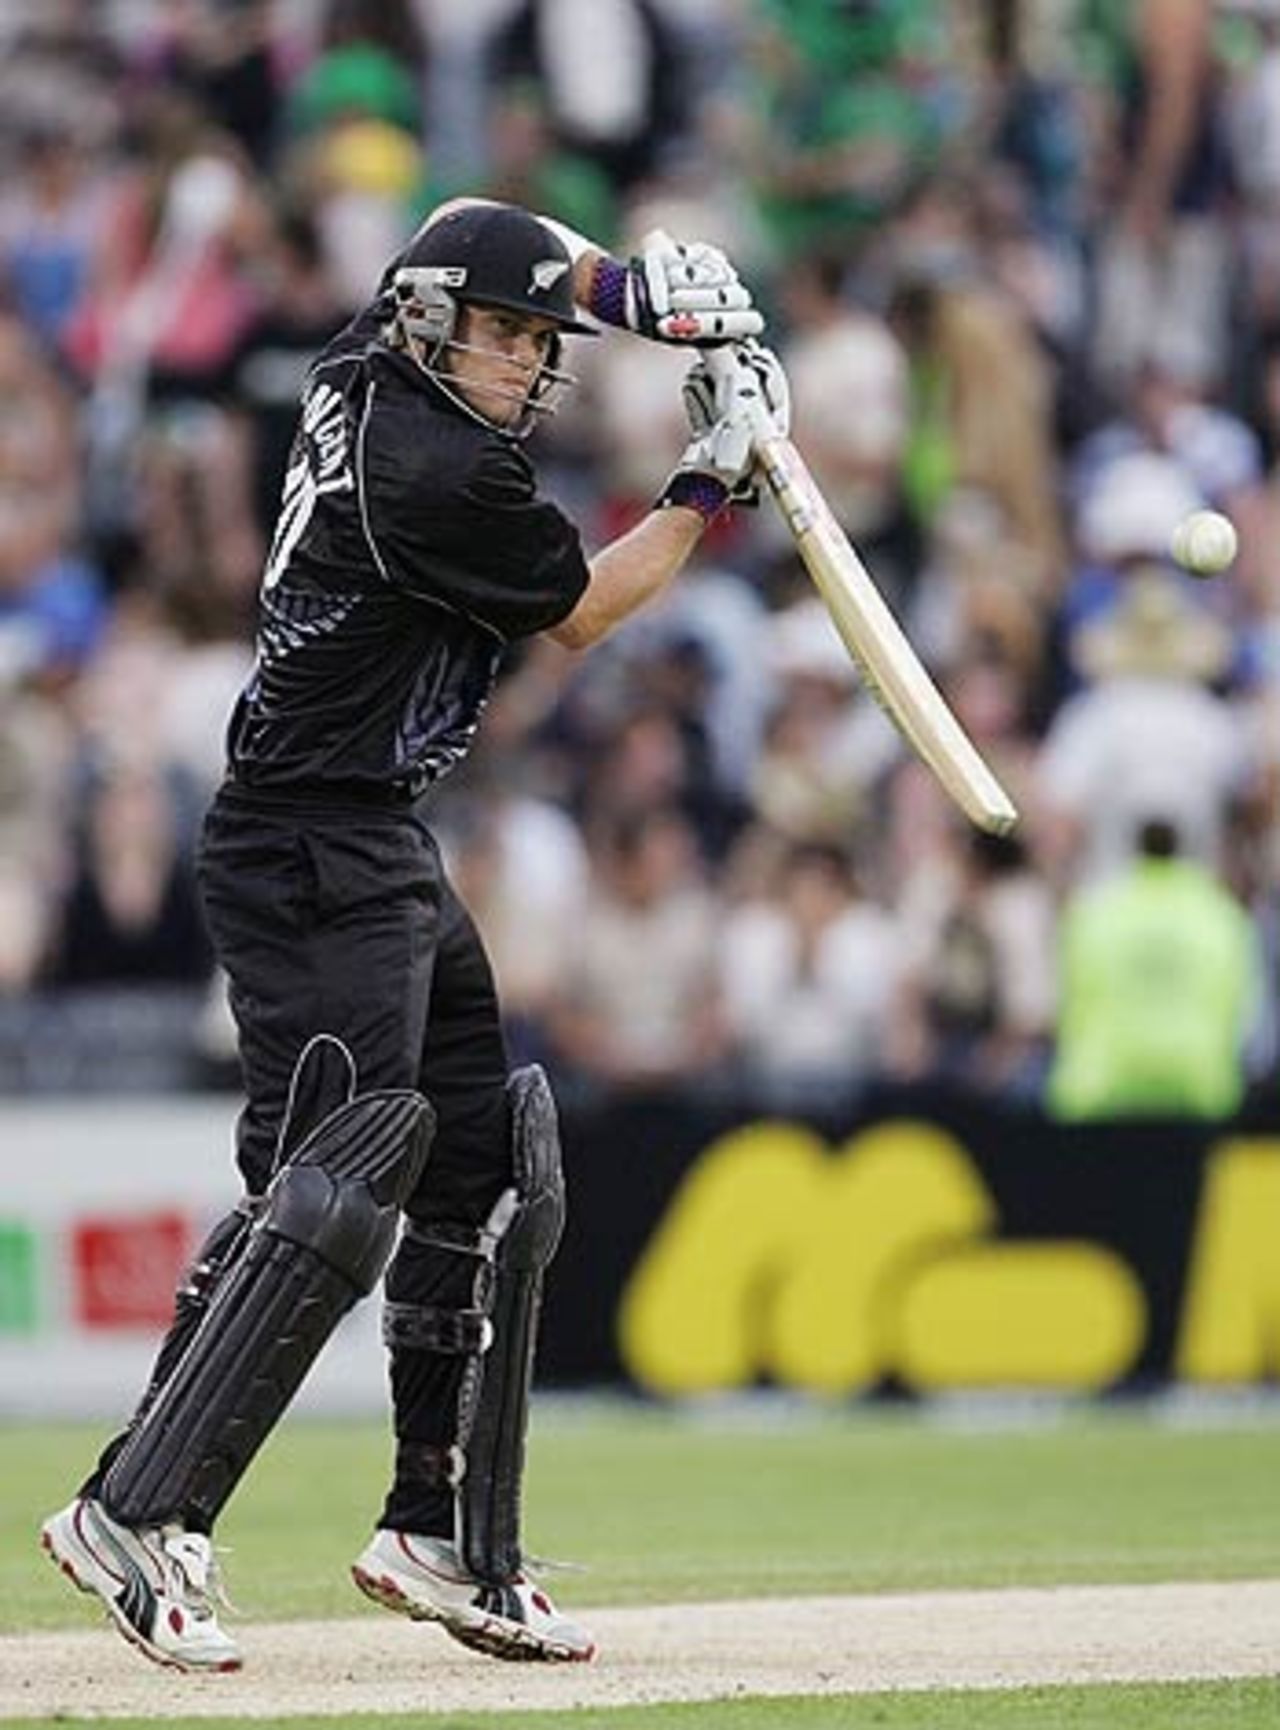 Lou Vincent got New Zealand off to a quick start, New Zealand v Australia, 3rd ODI, Christchurch, December 10, 2005